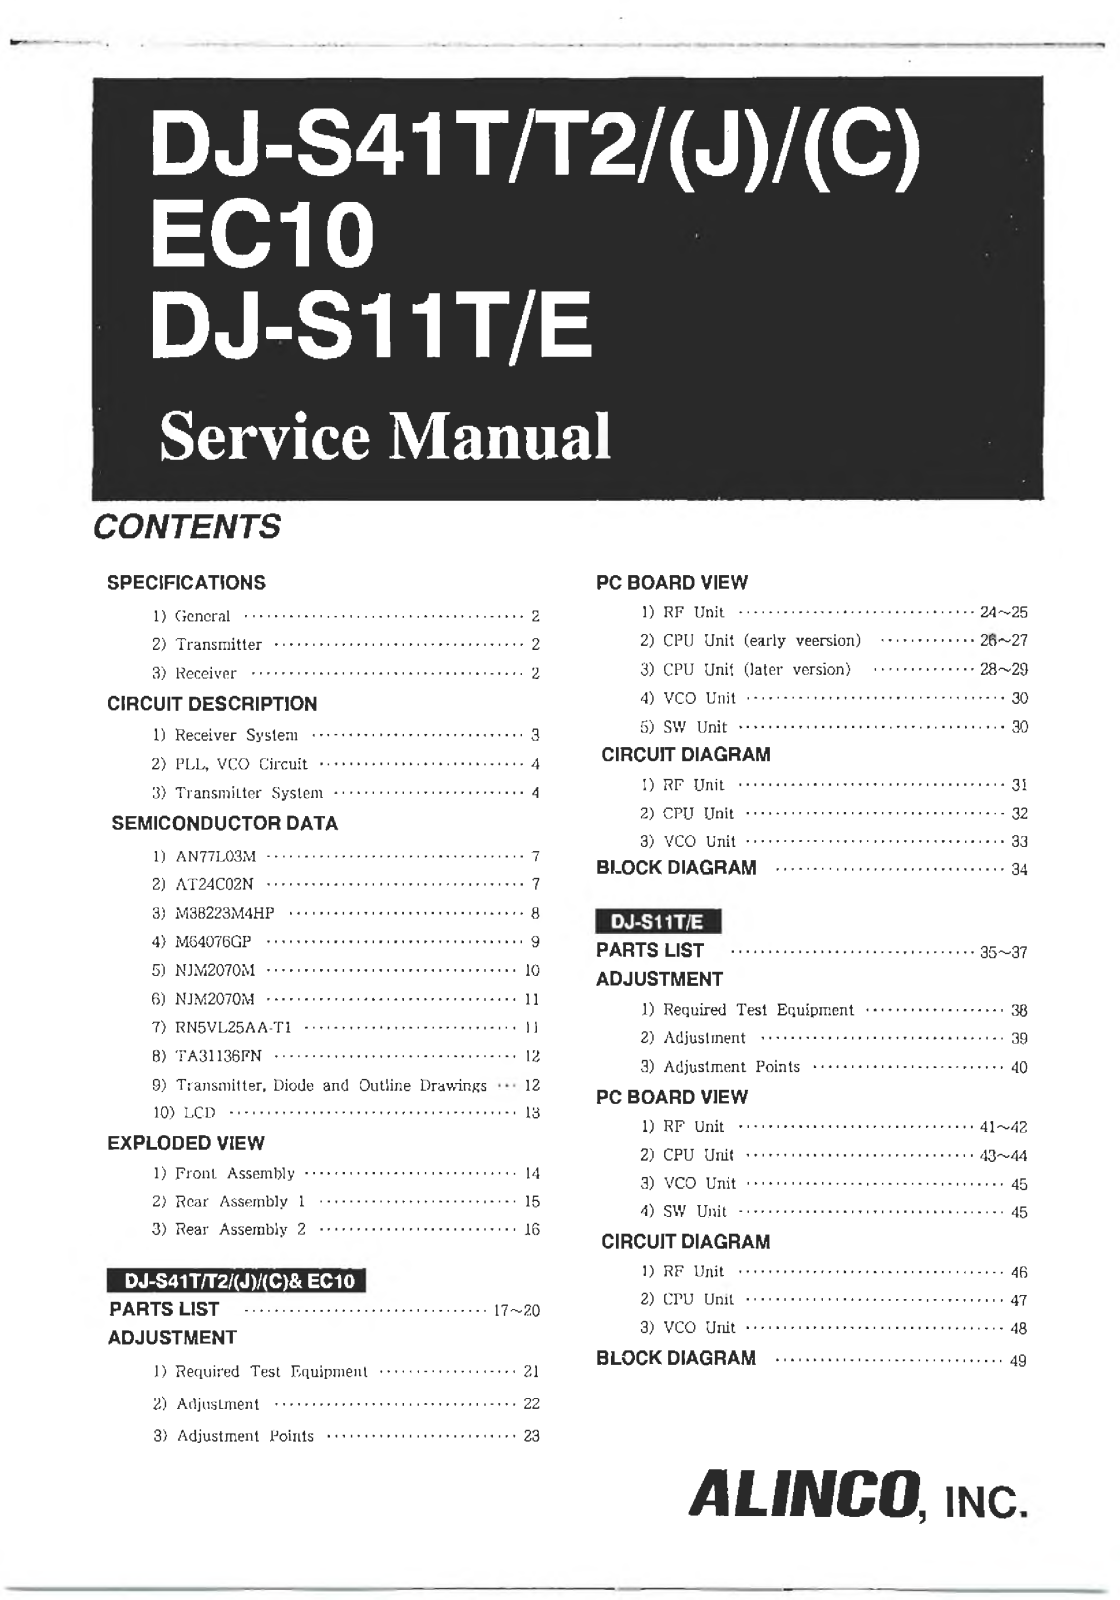 Alinco DJ-S11E, DJ-S11T, EC10, DJ-S41 C, DJ-S41 J Service Manual